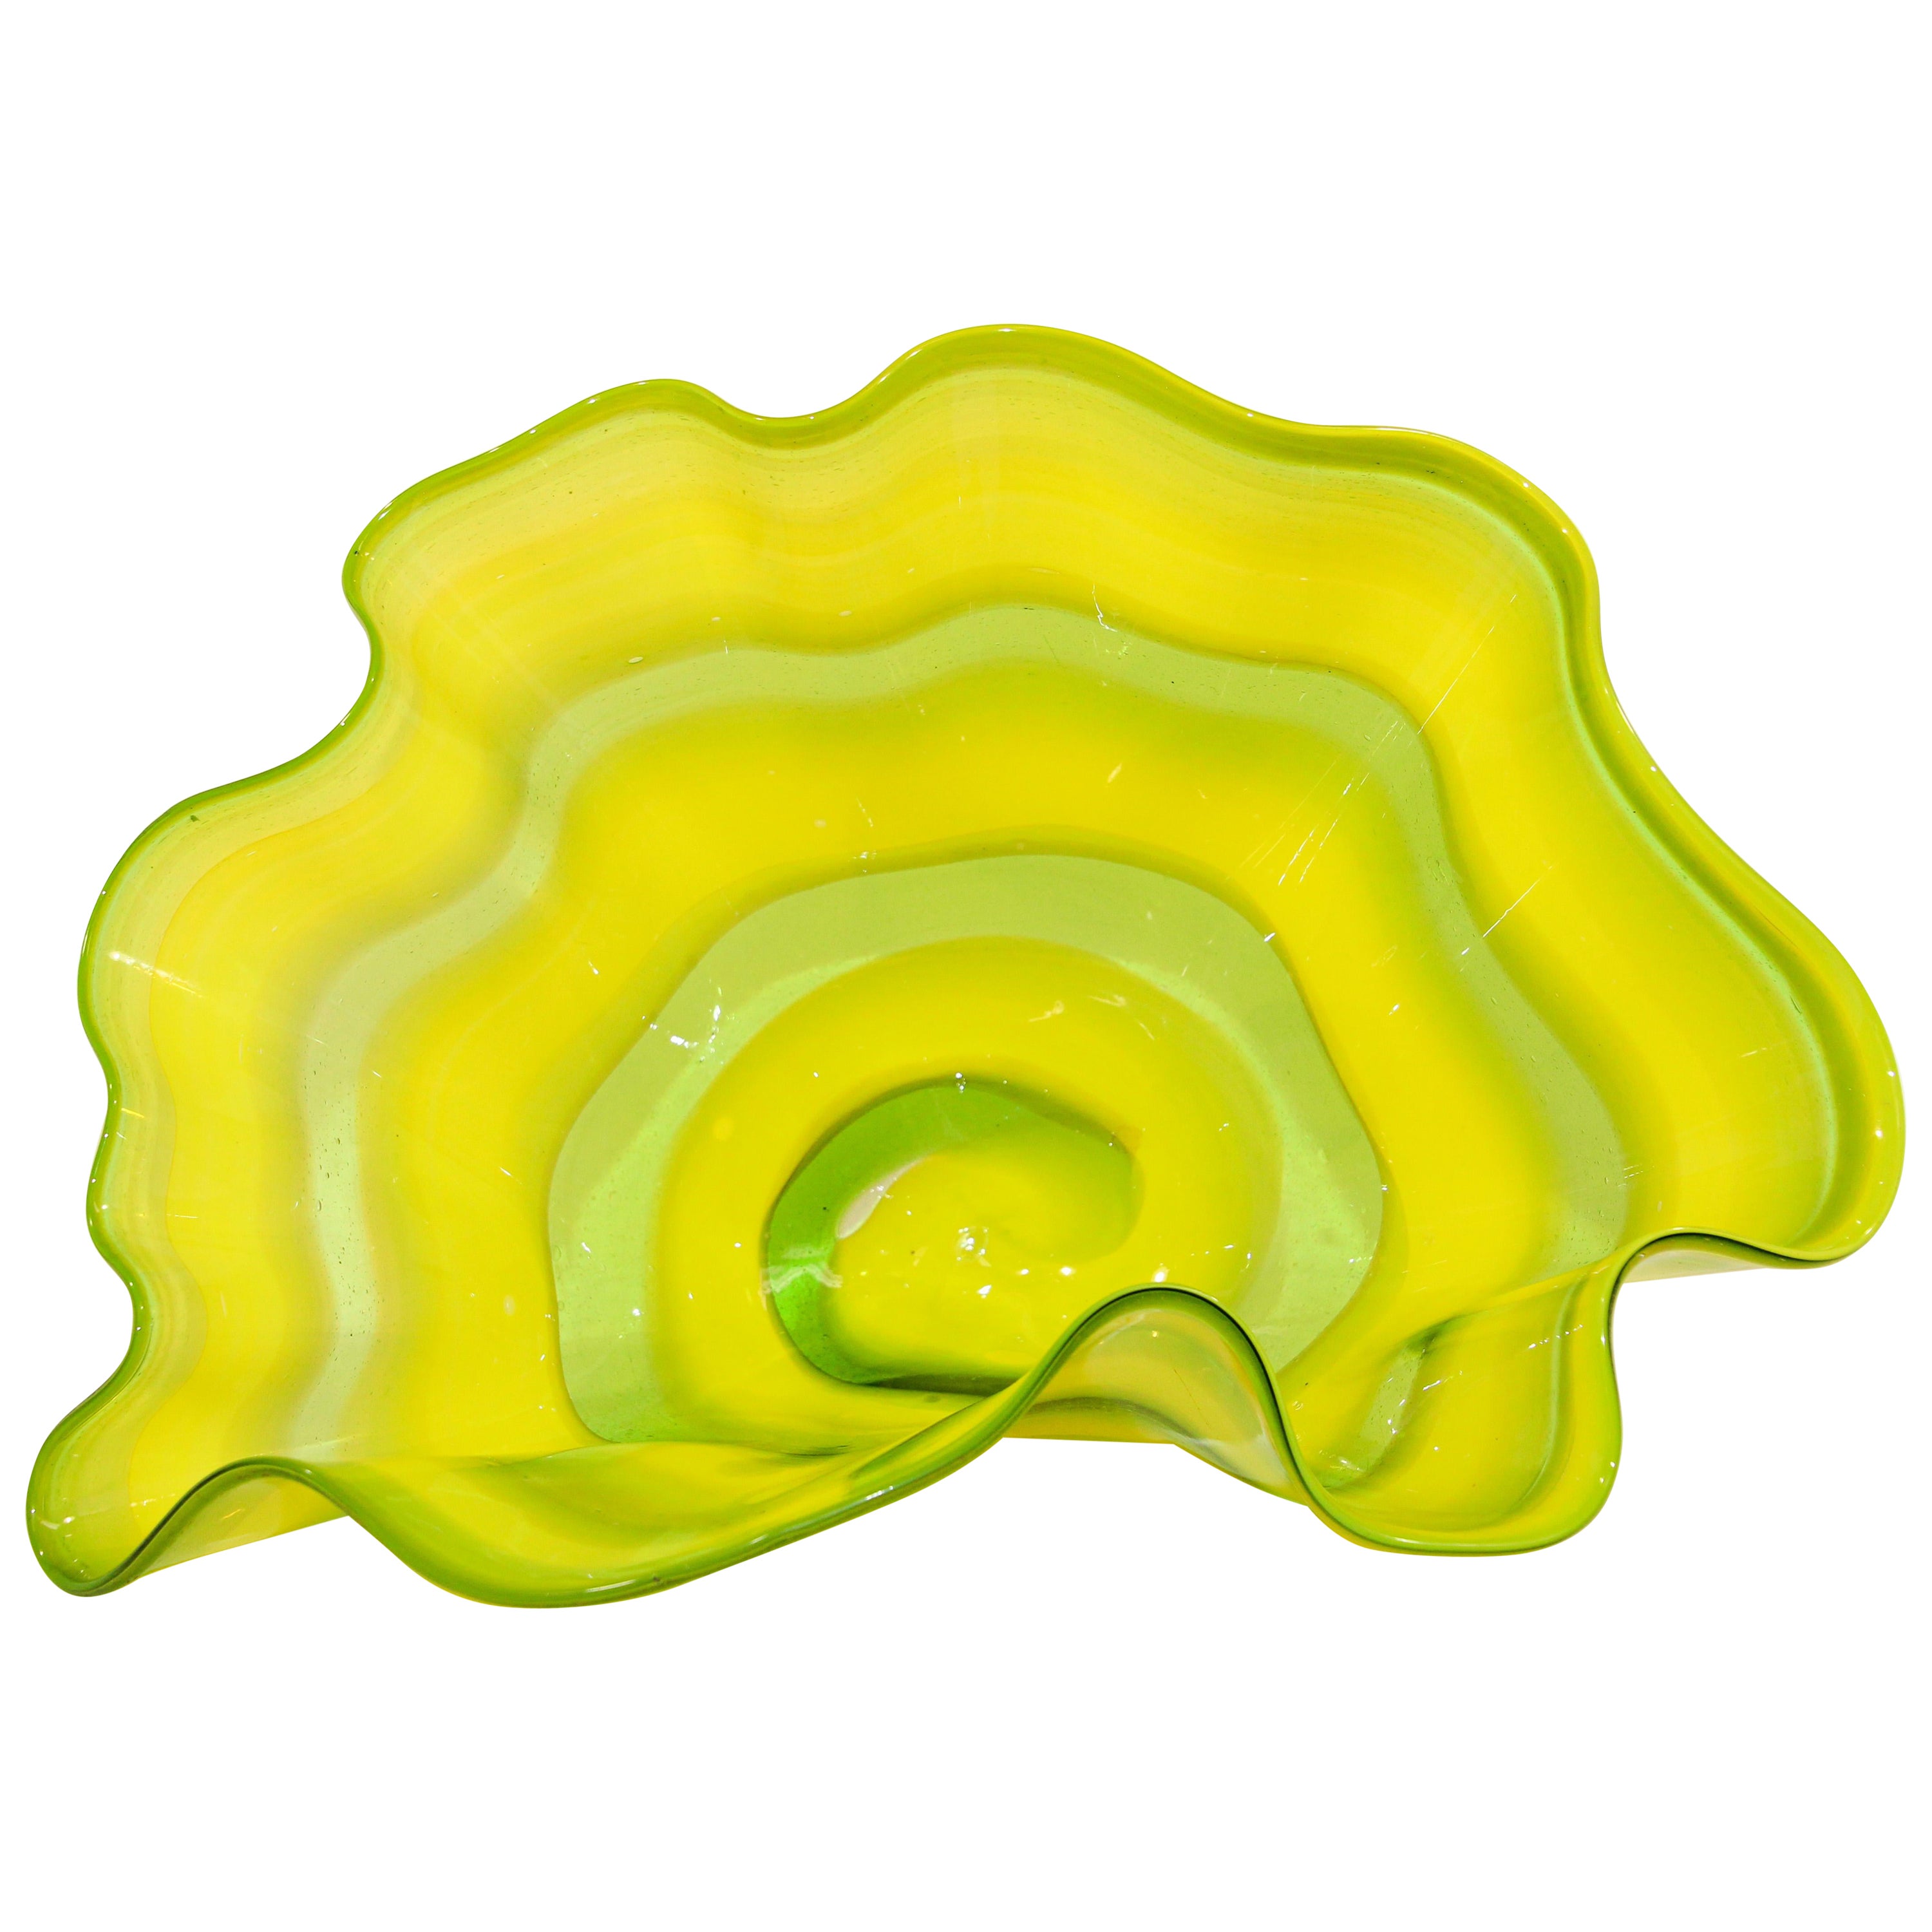 Große gelbe und grüne Schale aus Muranoglas in Seeform, im Stil von Chihuly